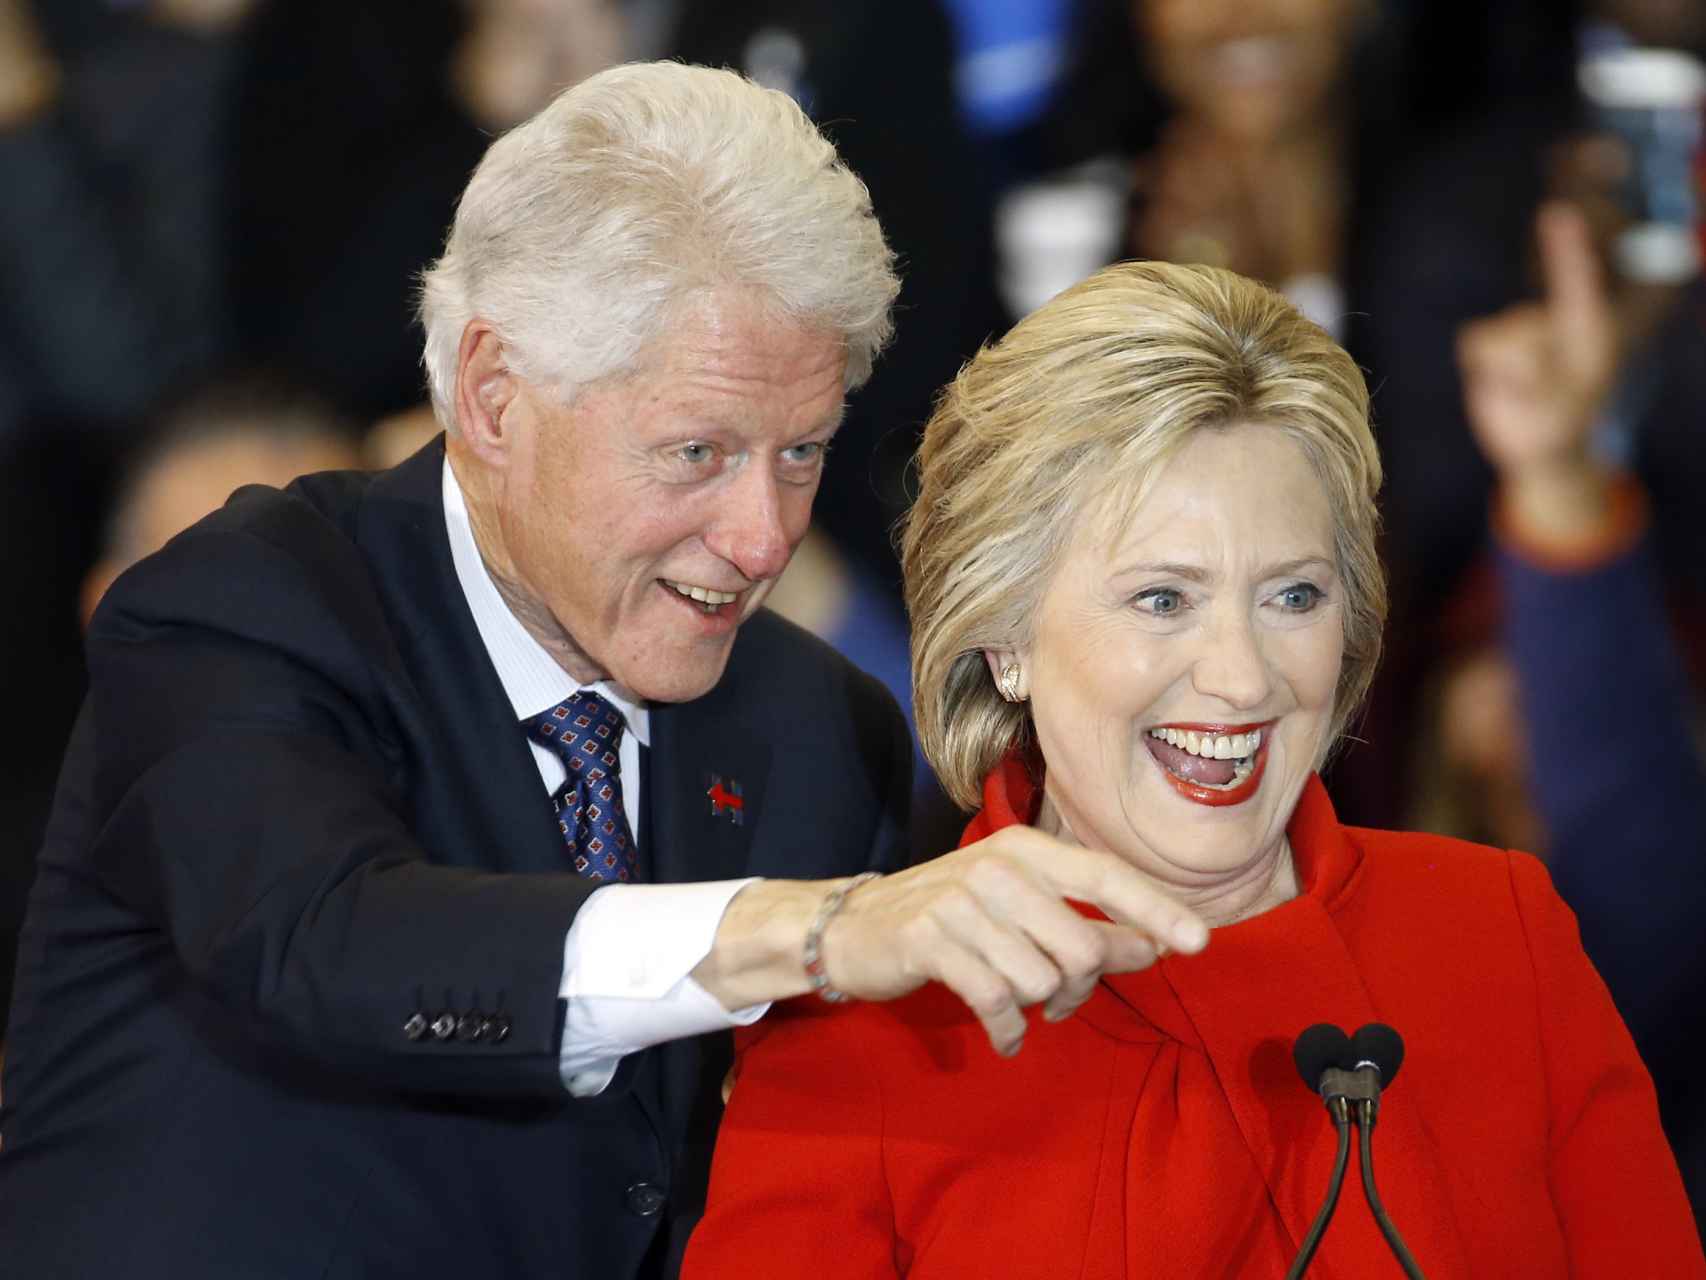 El matrimonio Clinton durante la campaña electora.